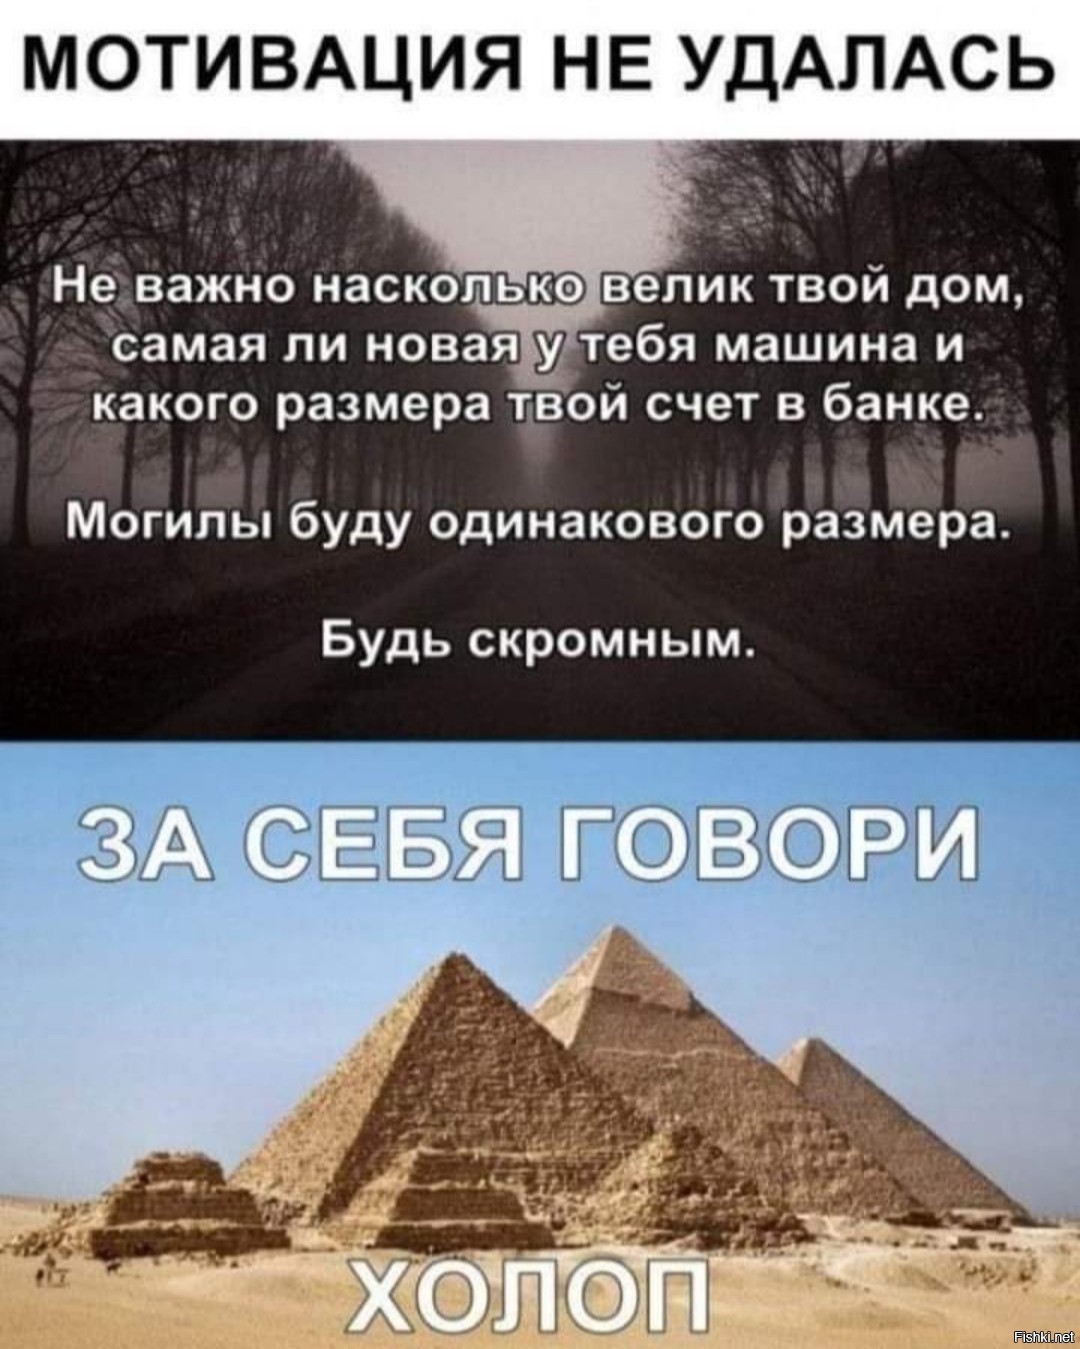 Насчет твоей. Пирамиды в Египте 2022. Пирамиды в повседневной жизни. Показ около египетских пирамид.